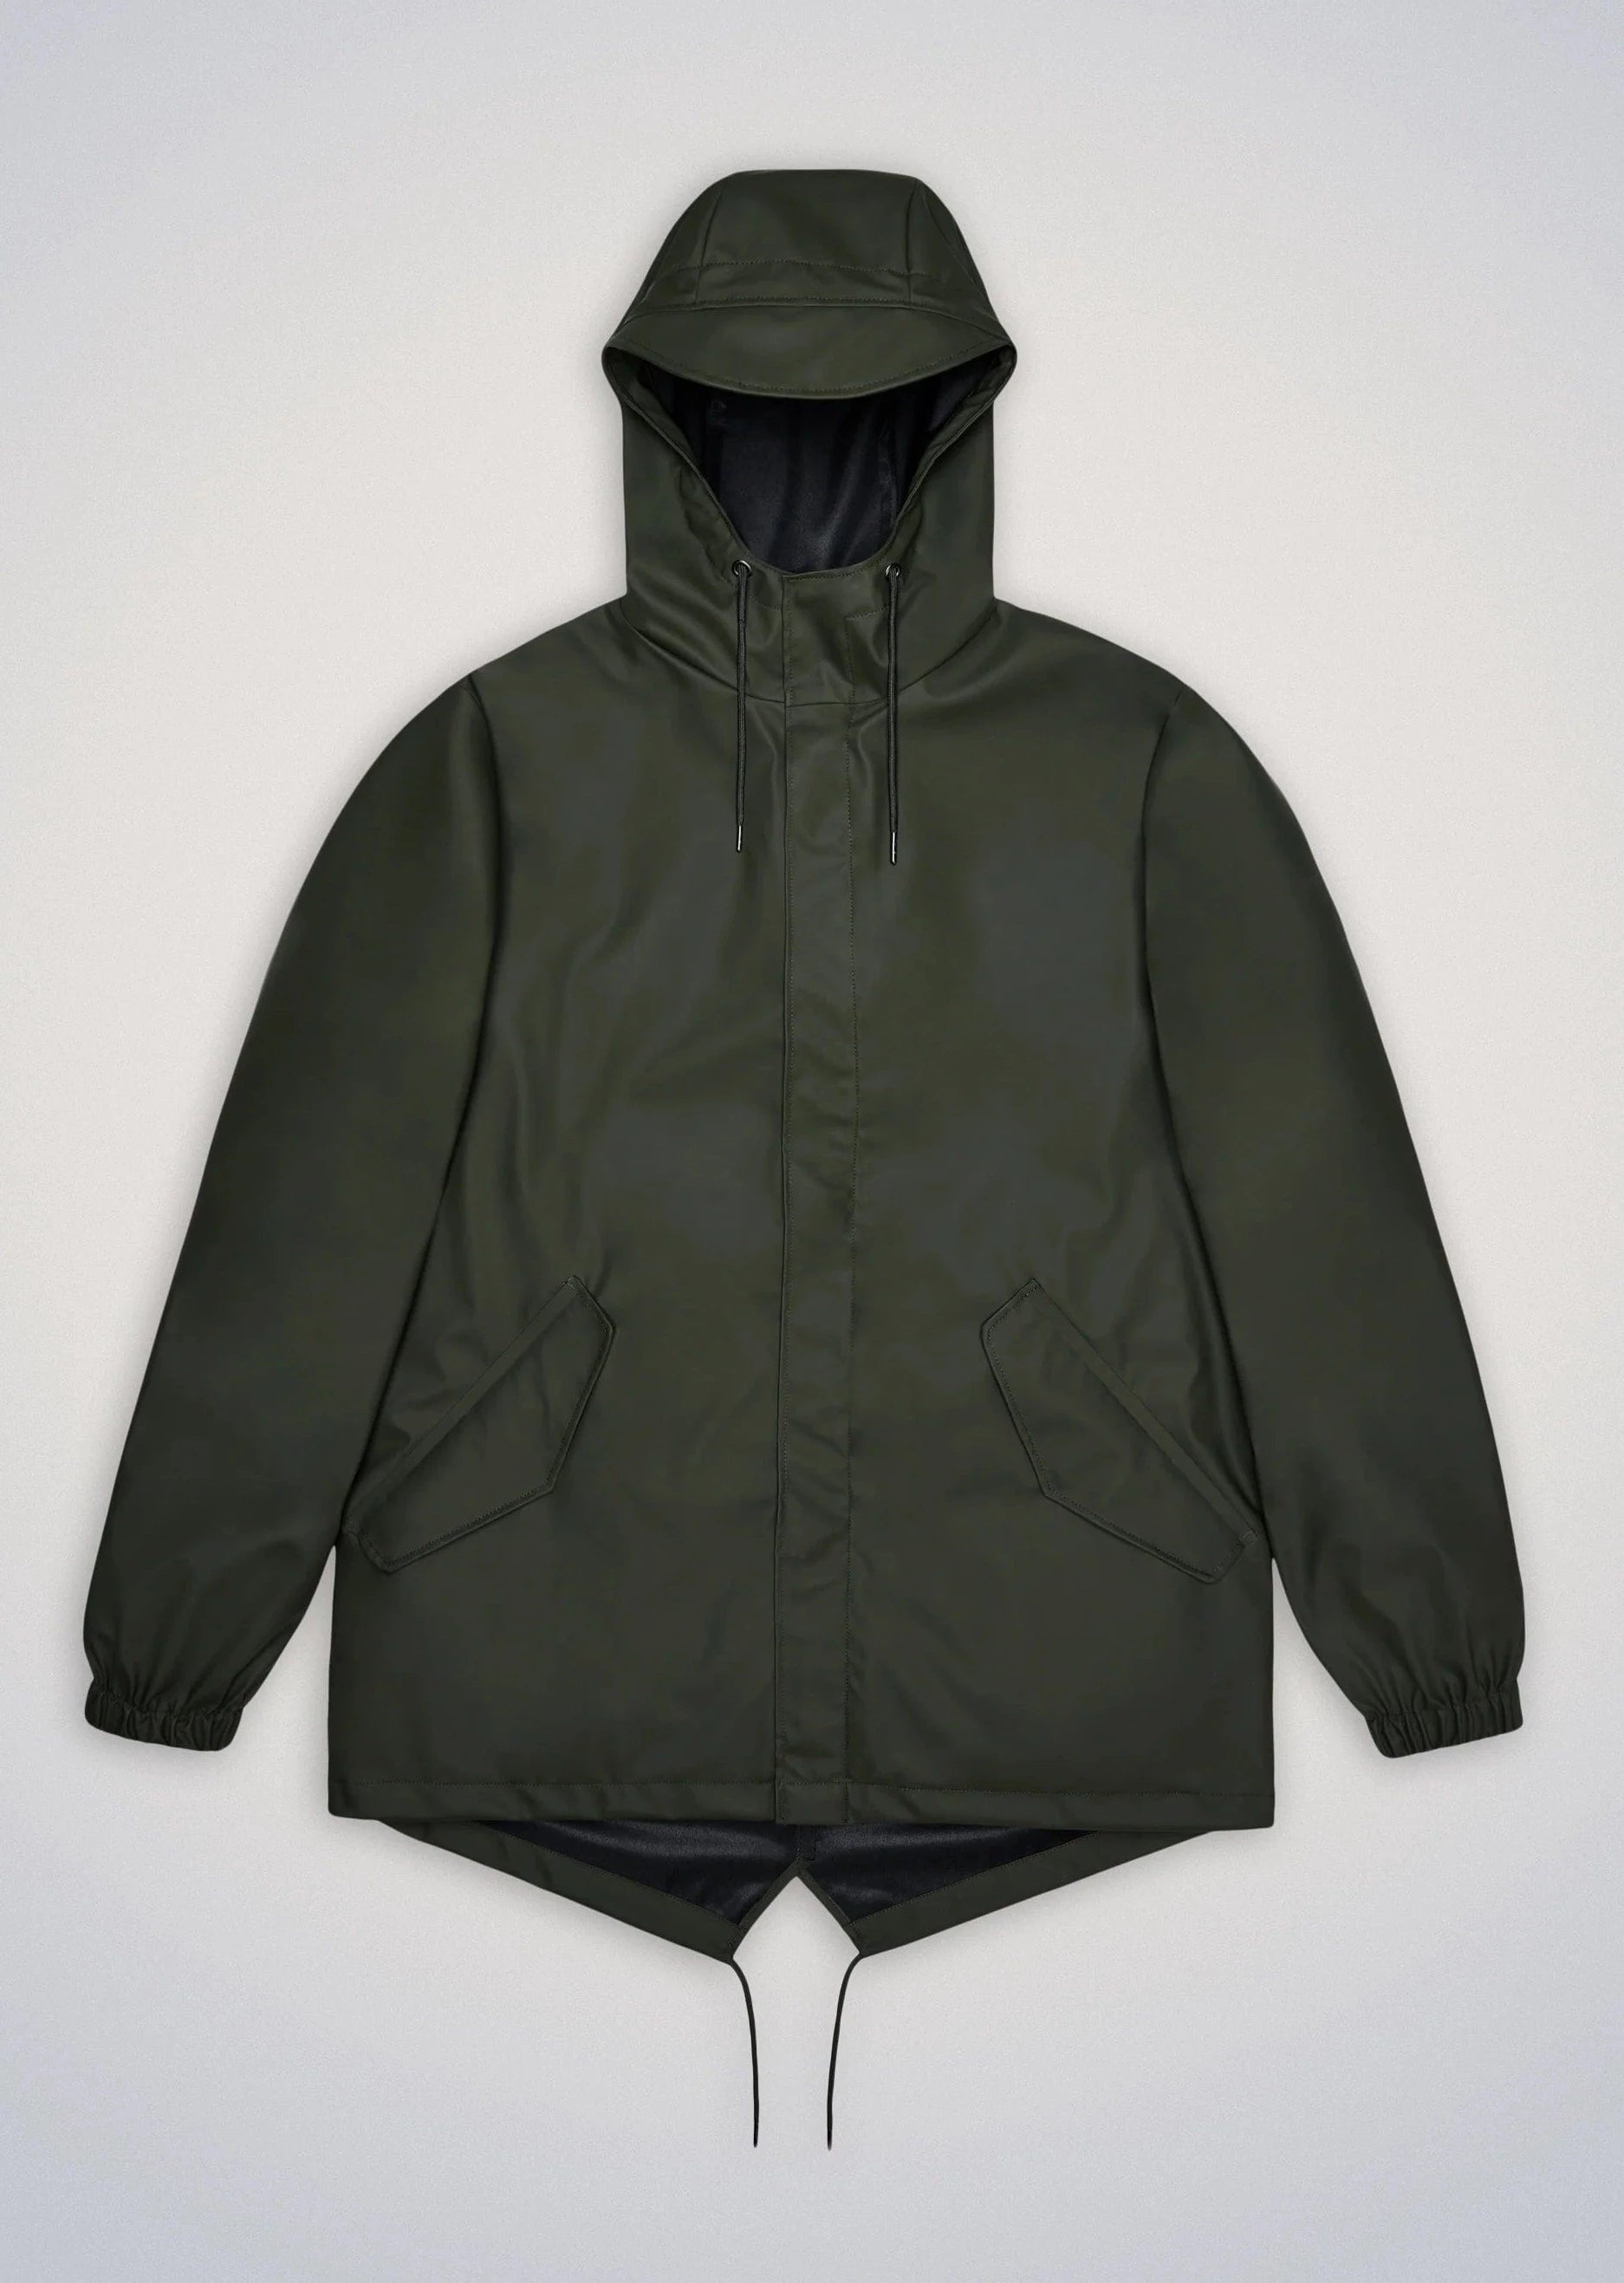 Rains Veste/Blouson Green / XS Imperméable Rains - Fishtail Jacket